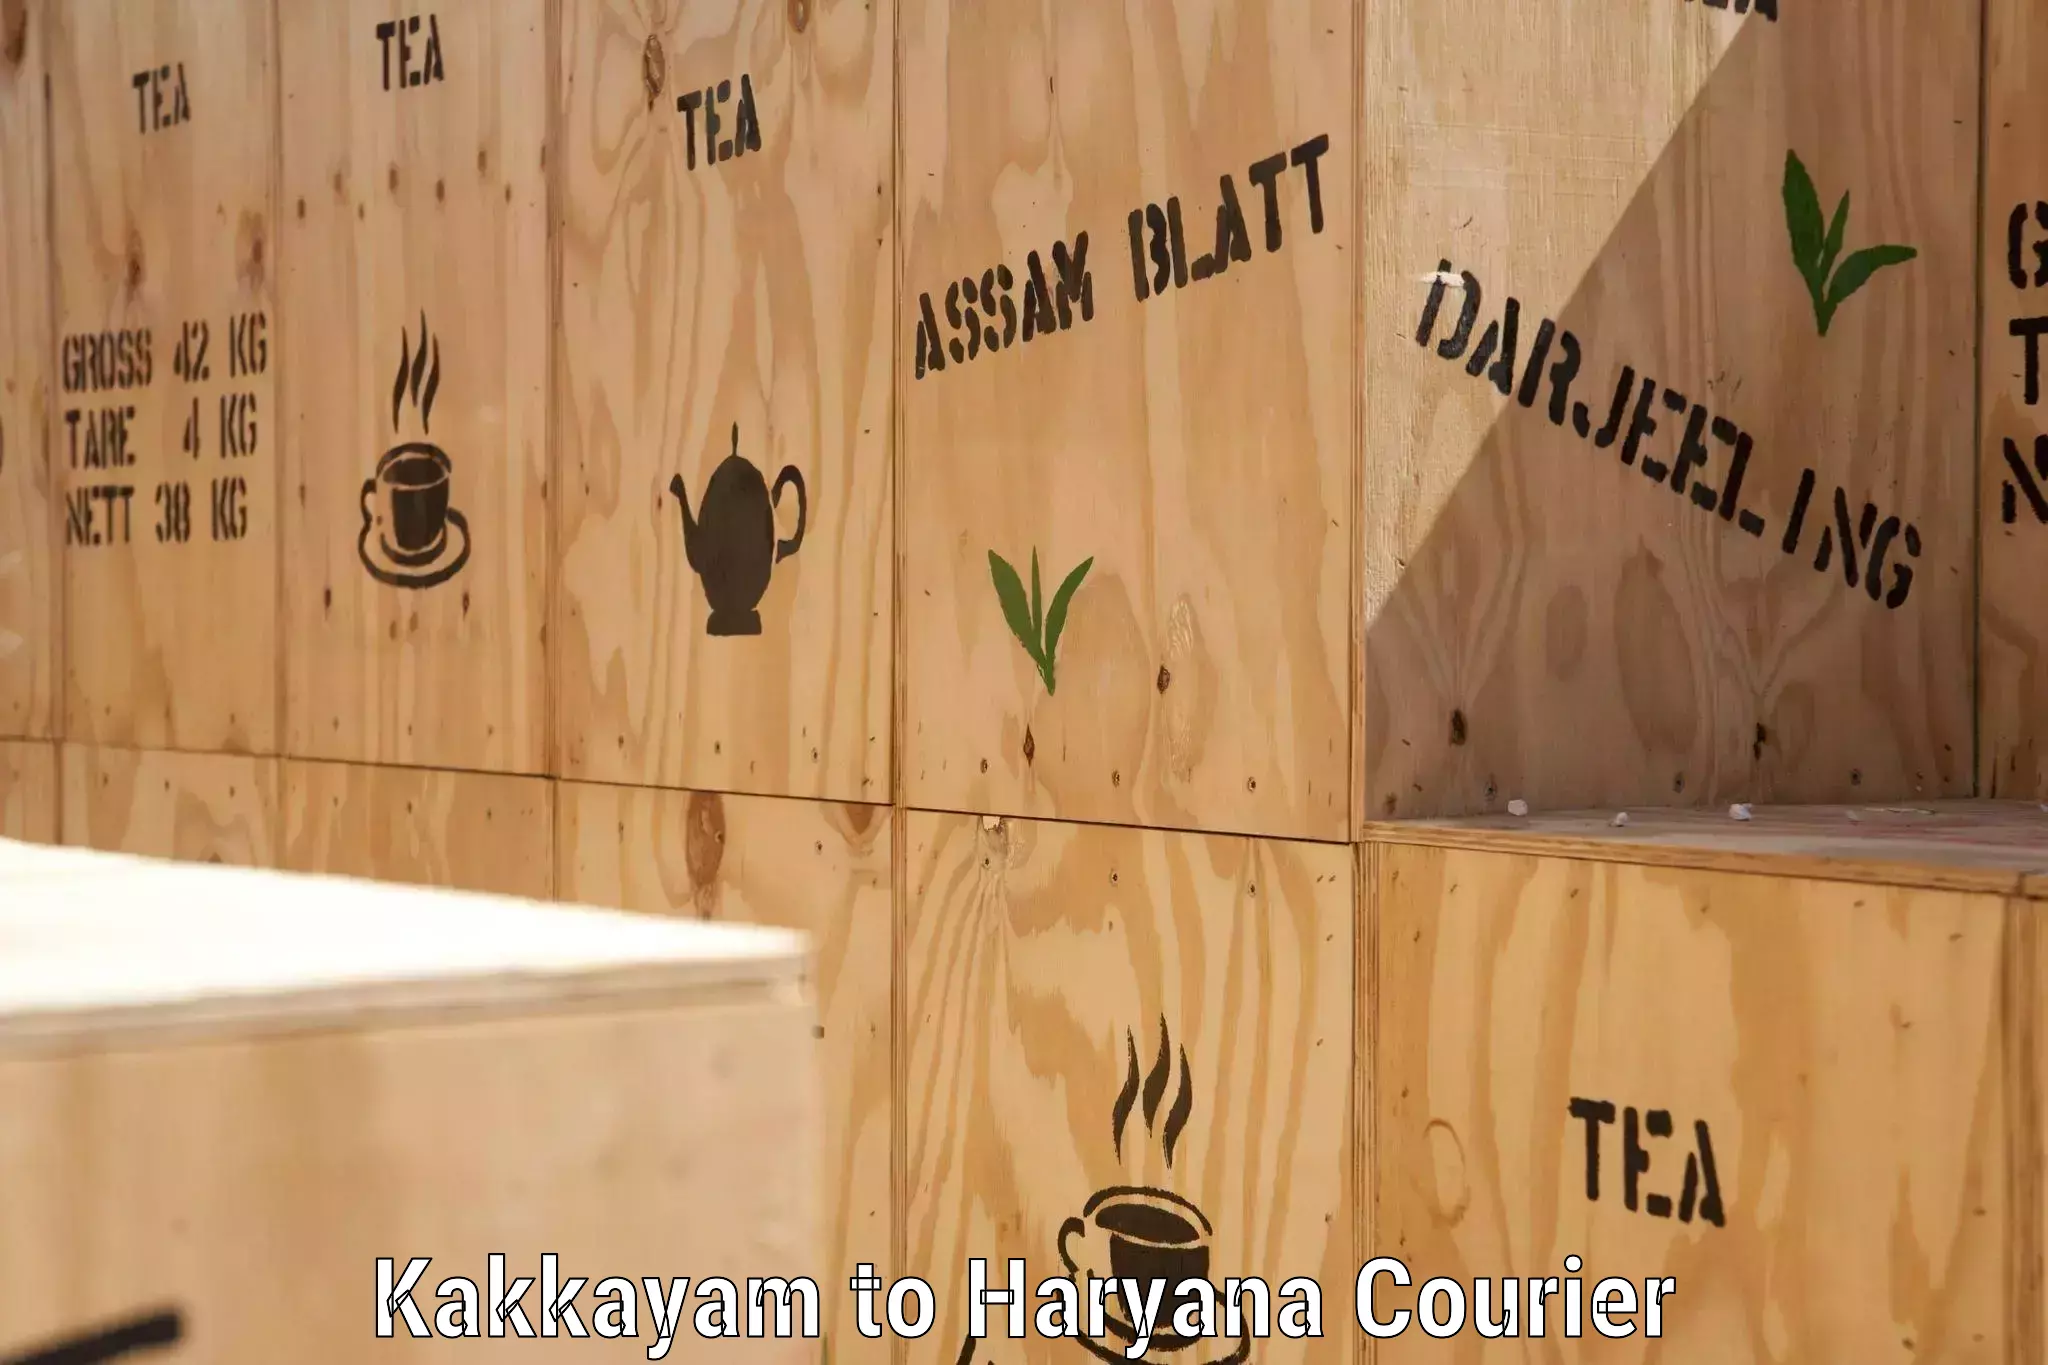 Supply chain efficiency Kakkayam to Taraori